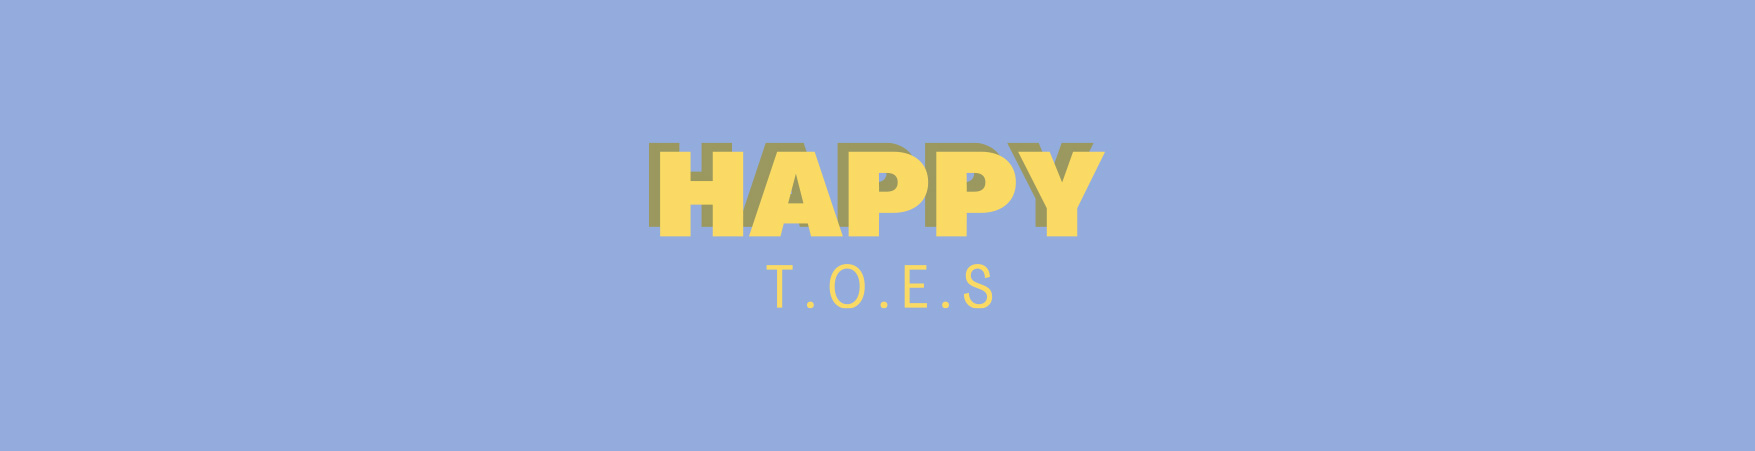 Happy T.O.E.S